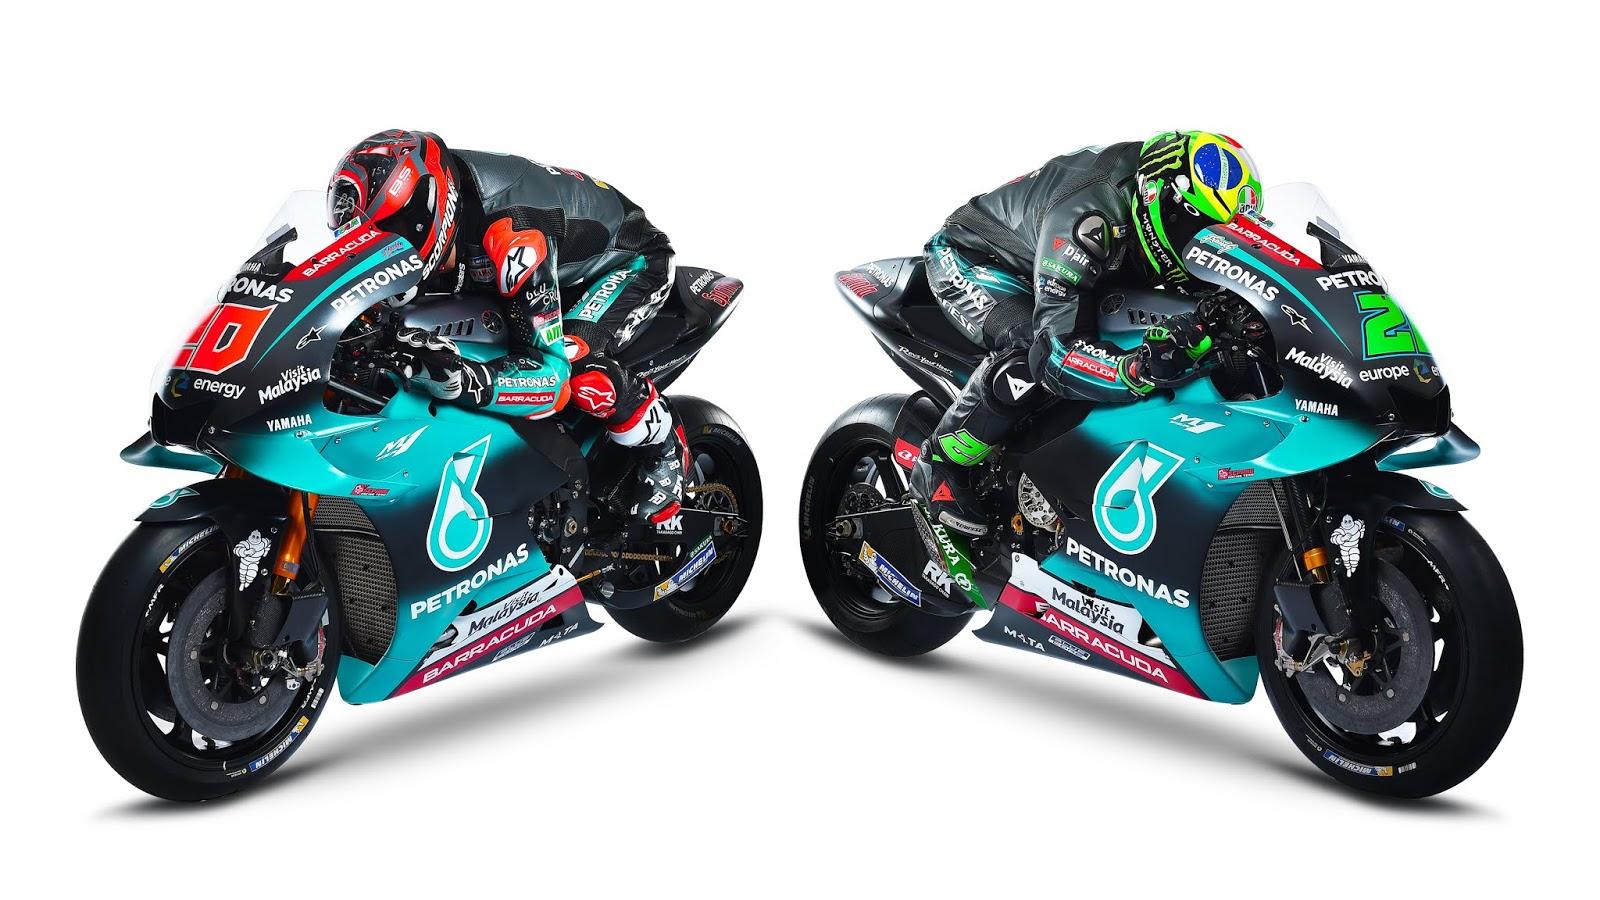 Petronas Yamaha SRT 2019 MotoGP Wallpaper